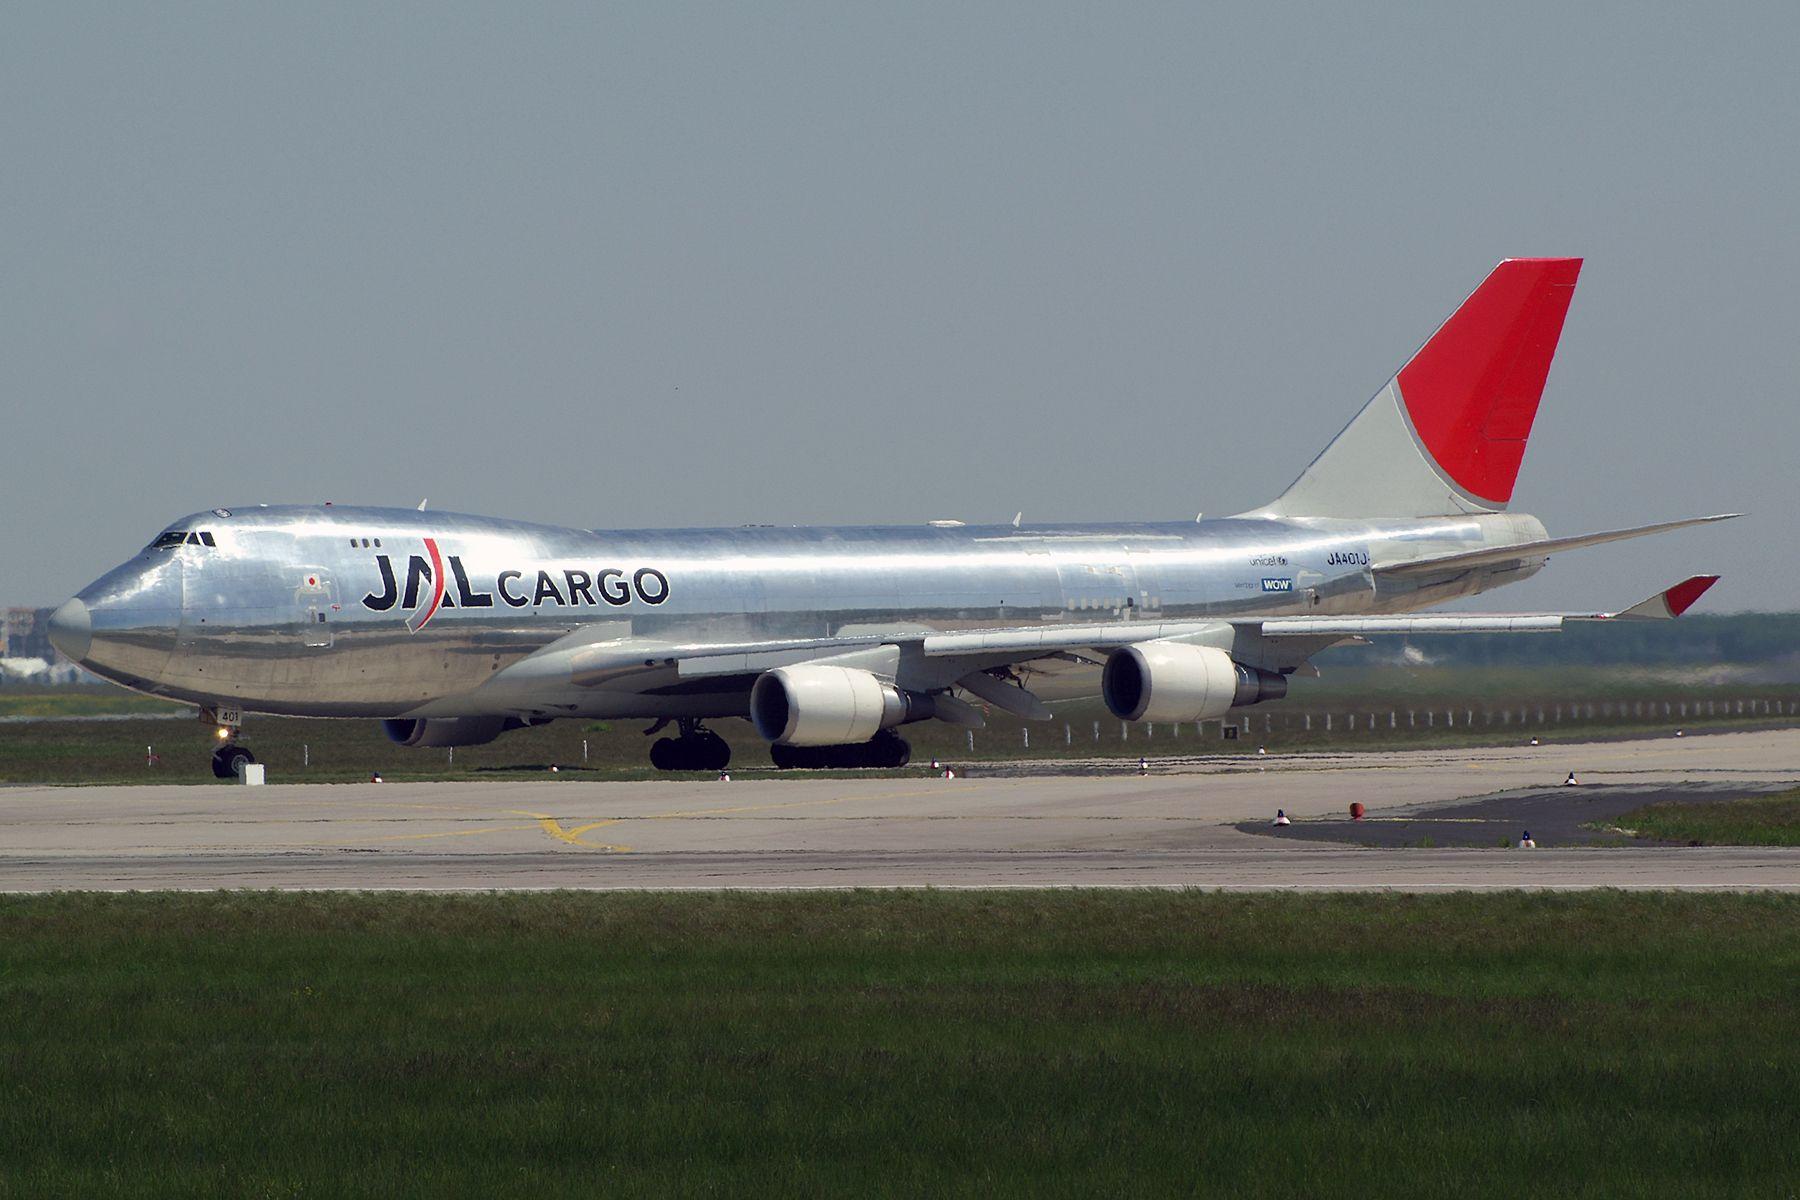 JAL Cargo Logo - File:Japan Airlines - JAL Cargo Boeing 747-446F-SCD JA401J ...